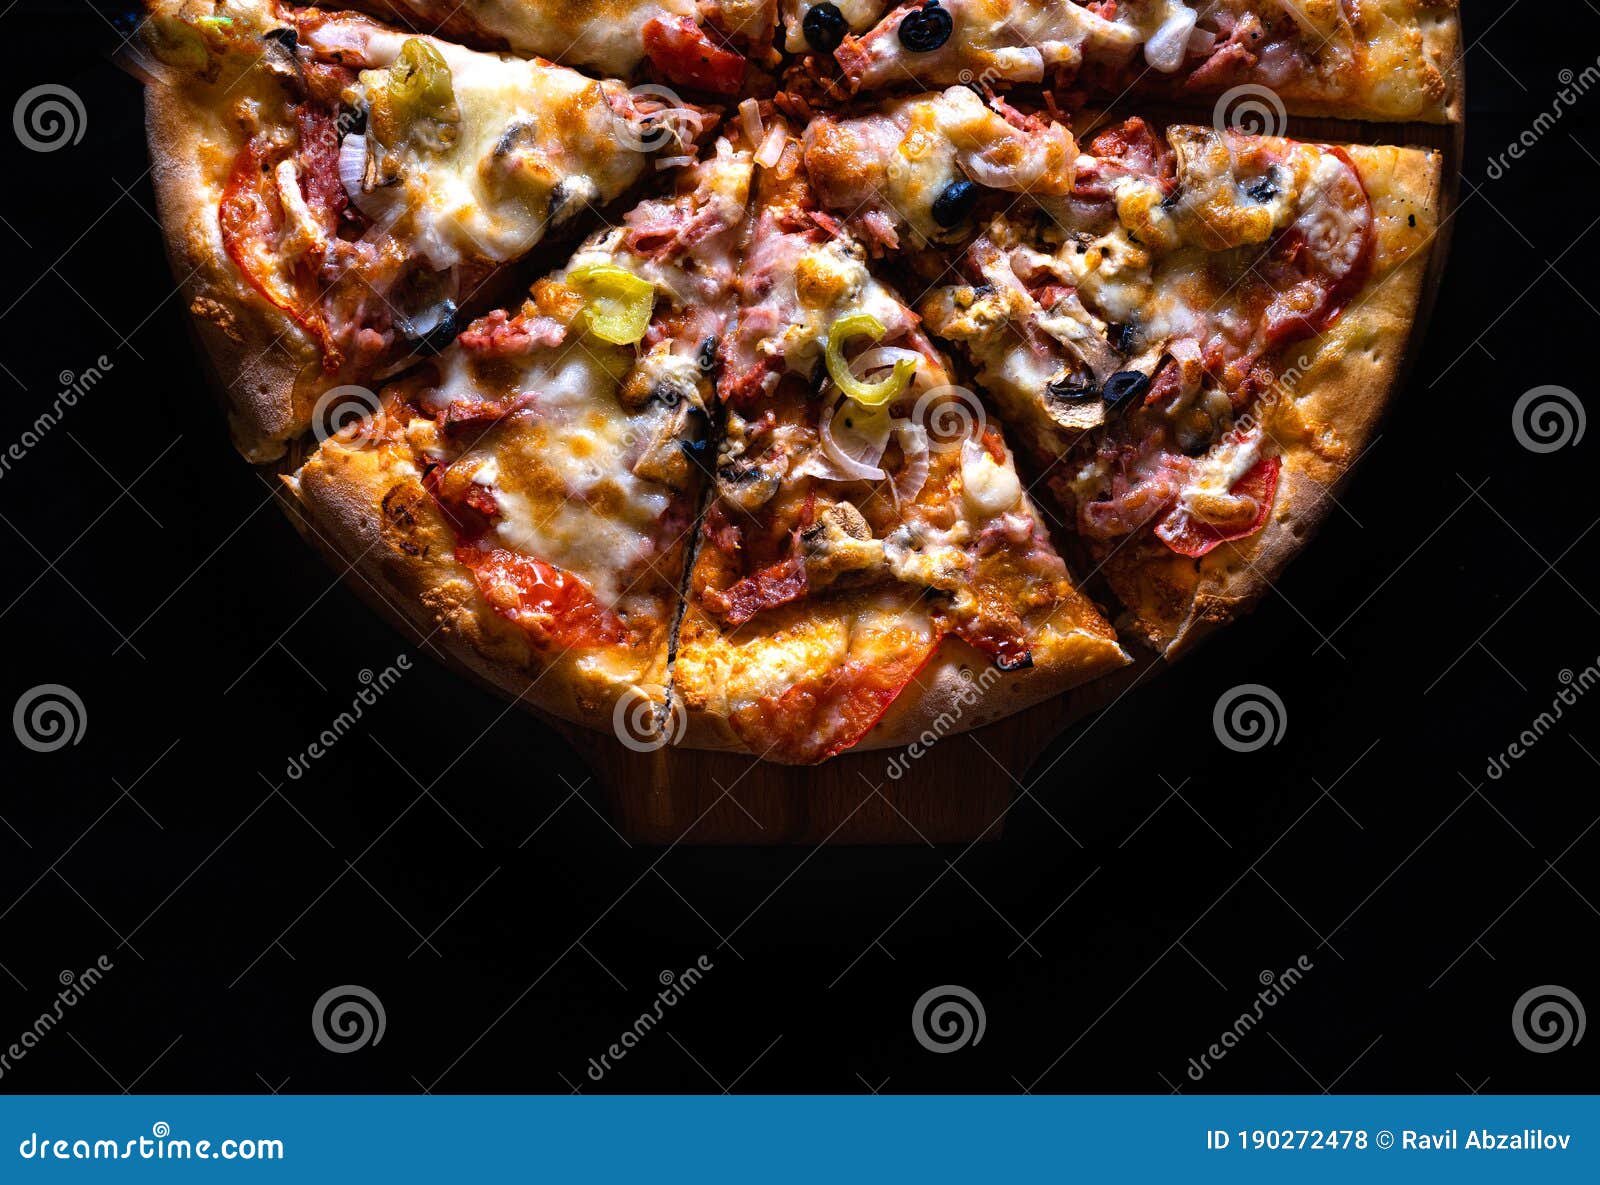 тесто черное на пиццу фото 67